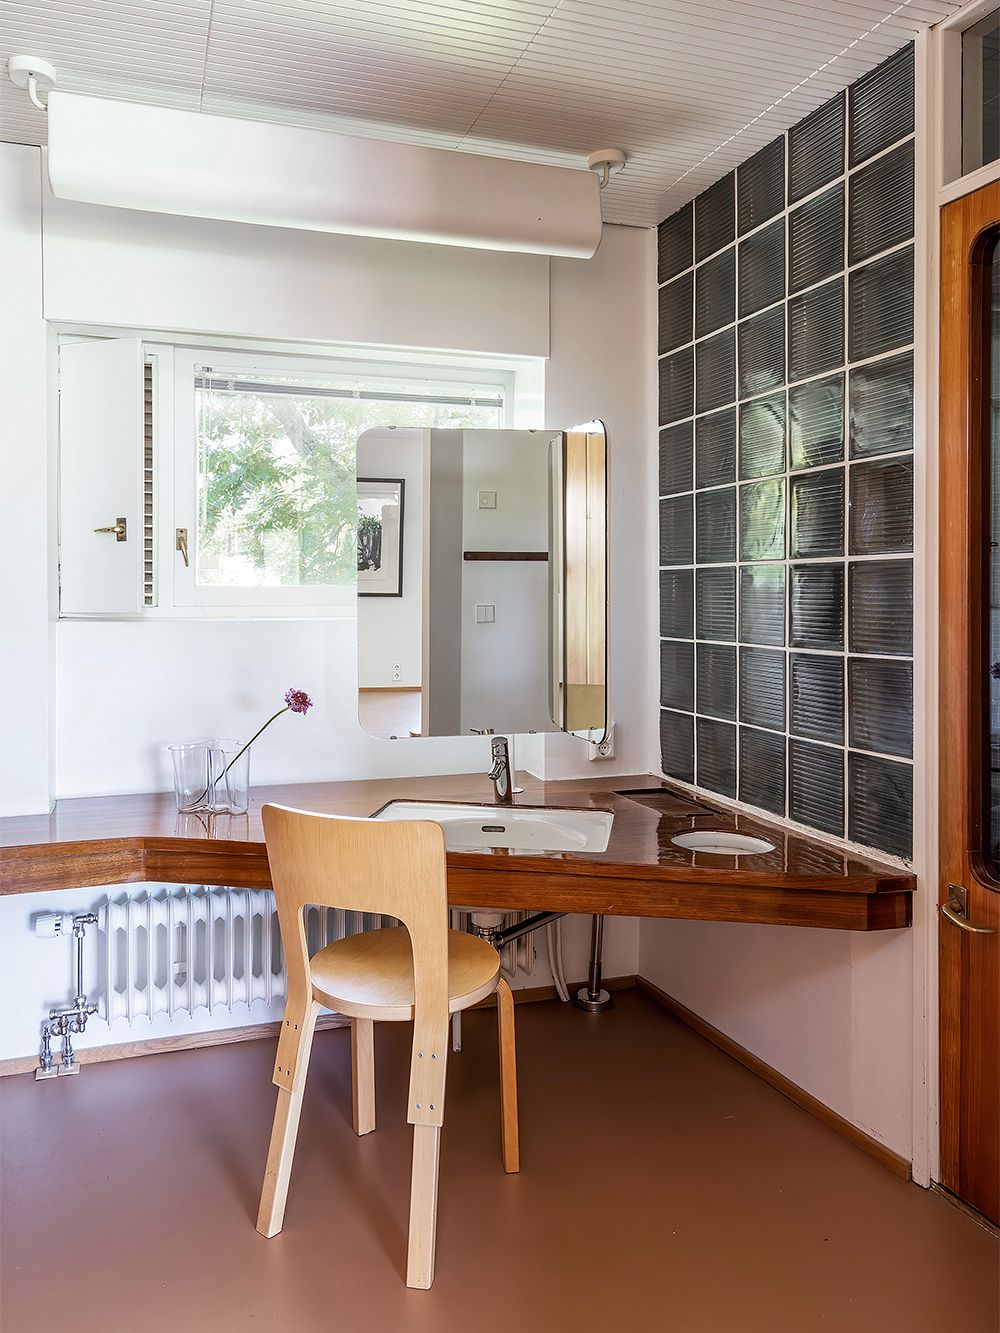 Kuva, jossa arkkitehti Aarne Ervin suunnittelema Villa Ervi. Kuvassa näkyy kylpyhuoneen sisustus.